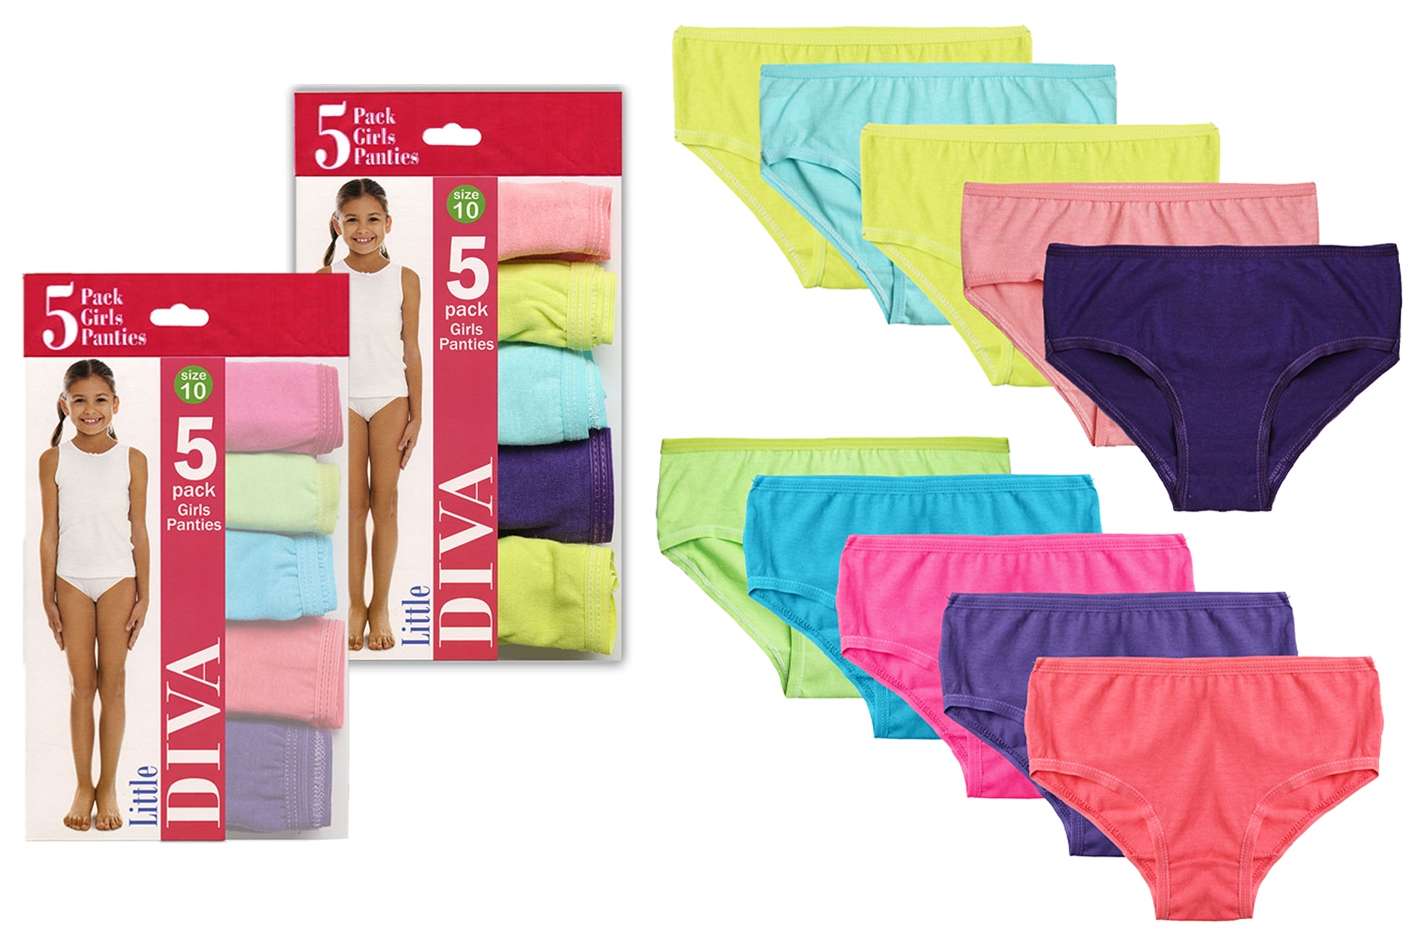 Girls' Cotton Brief Underwear, 14 Pack Panties